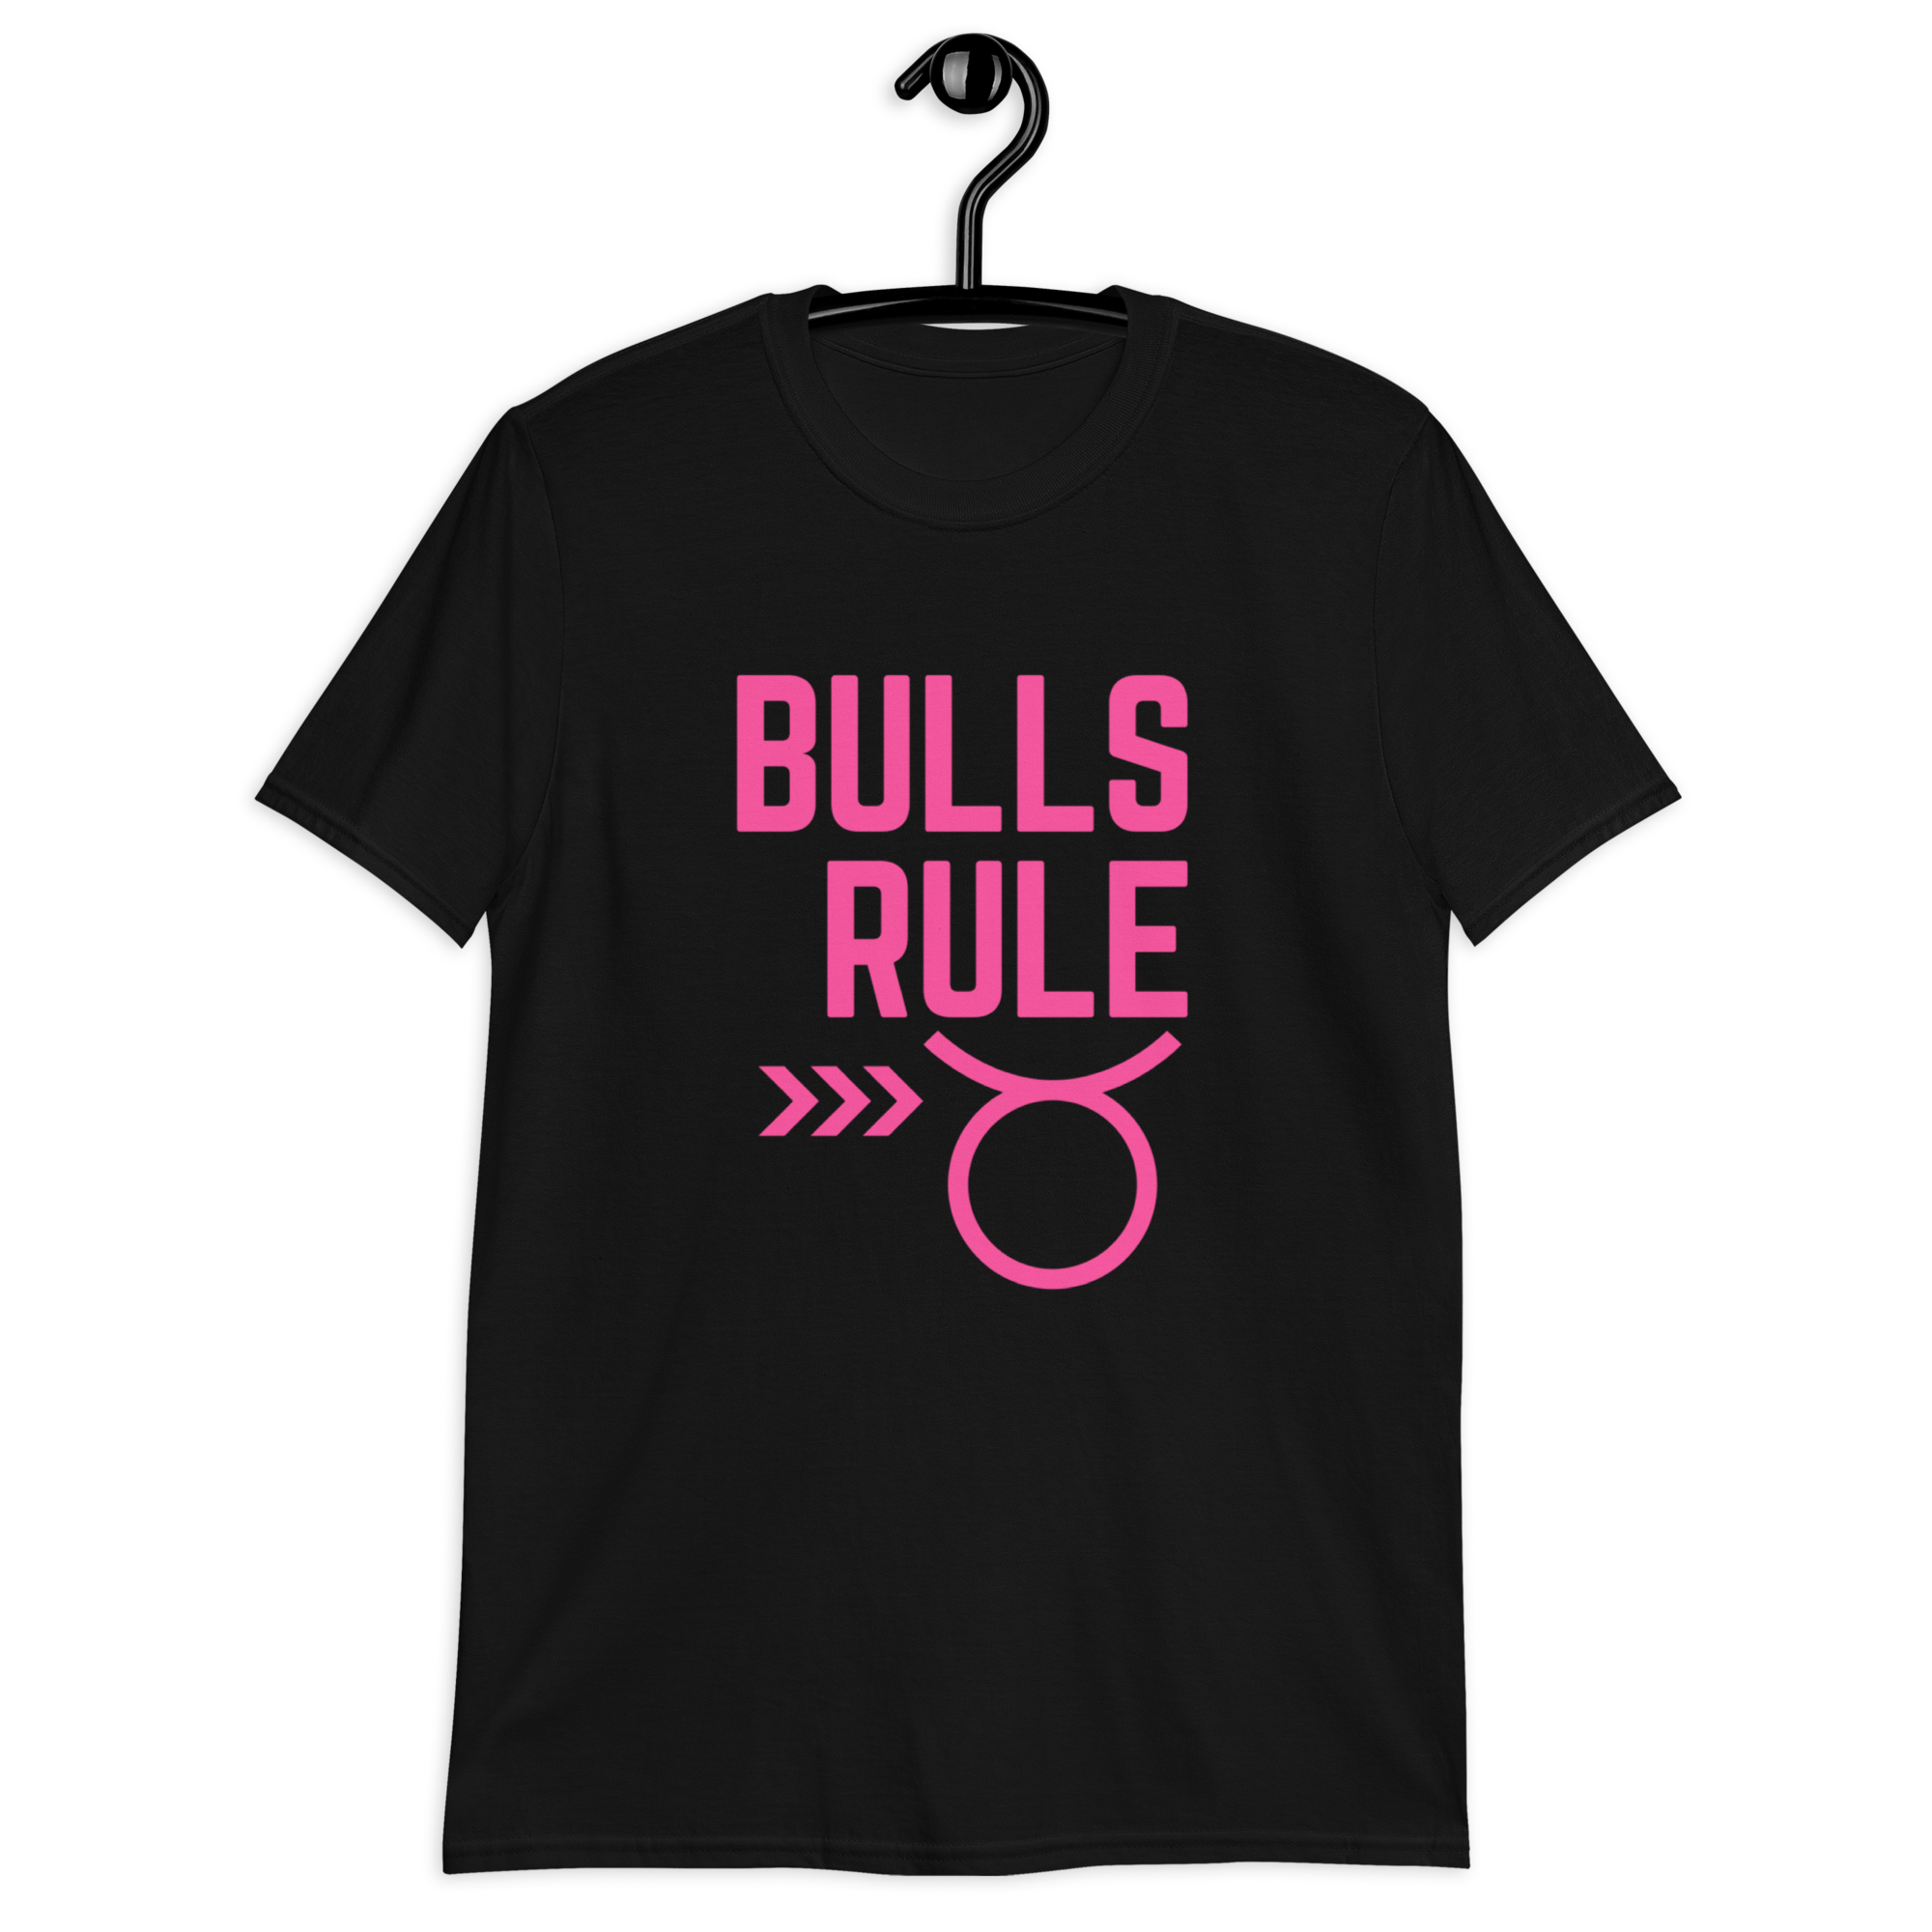 BULLS RULE